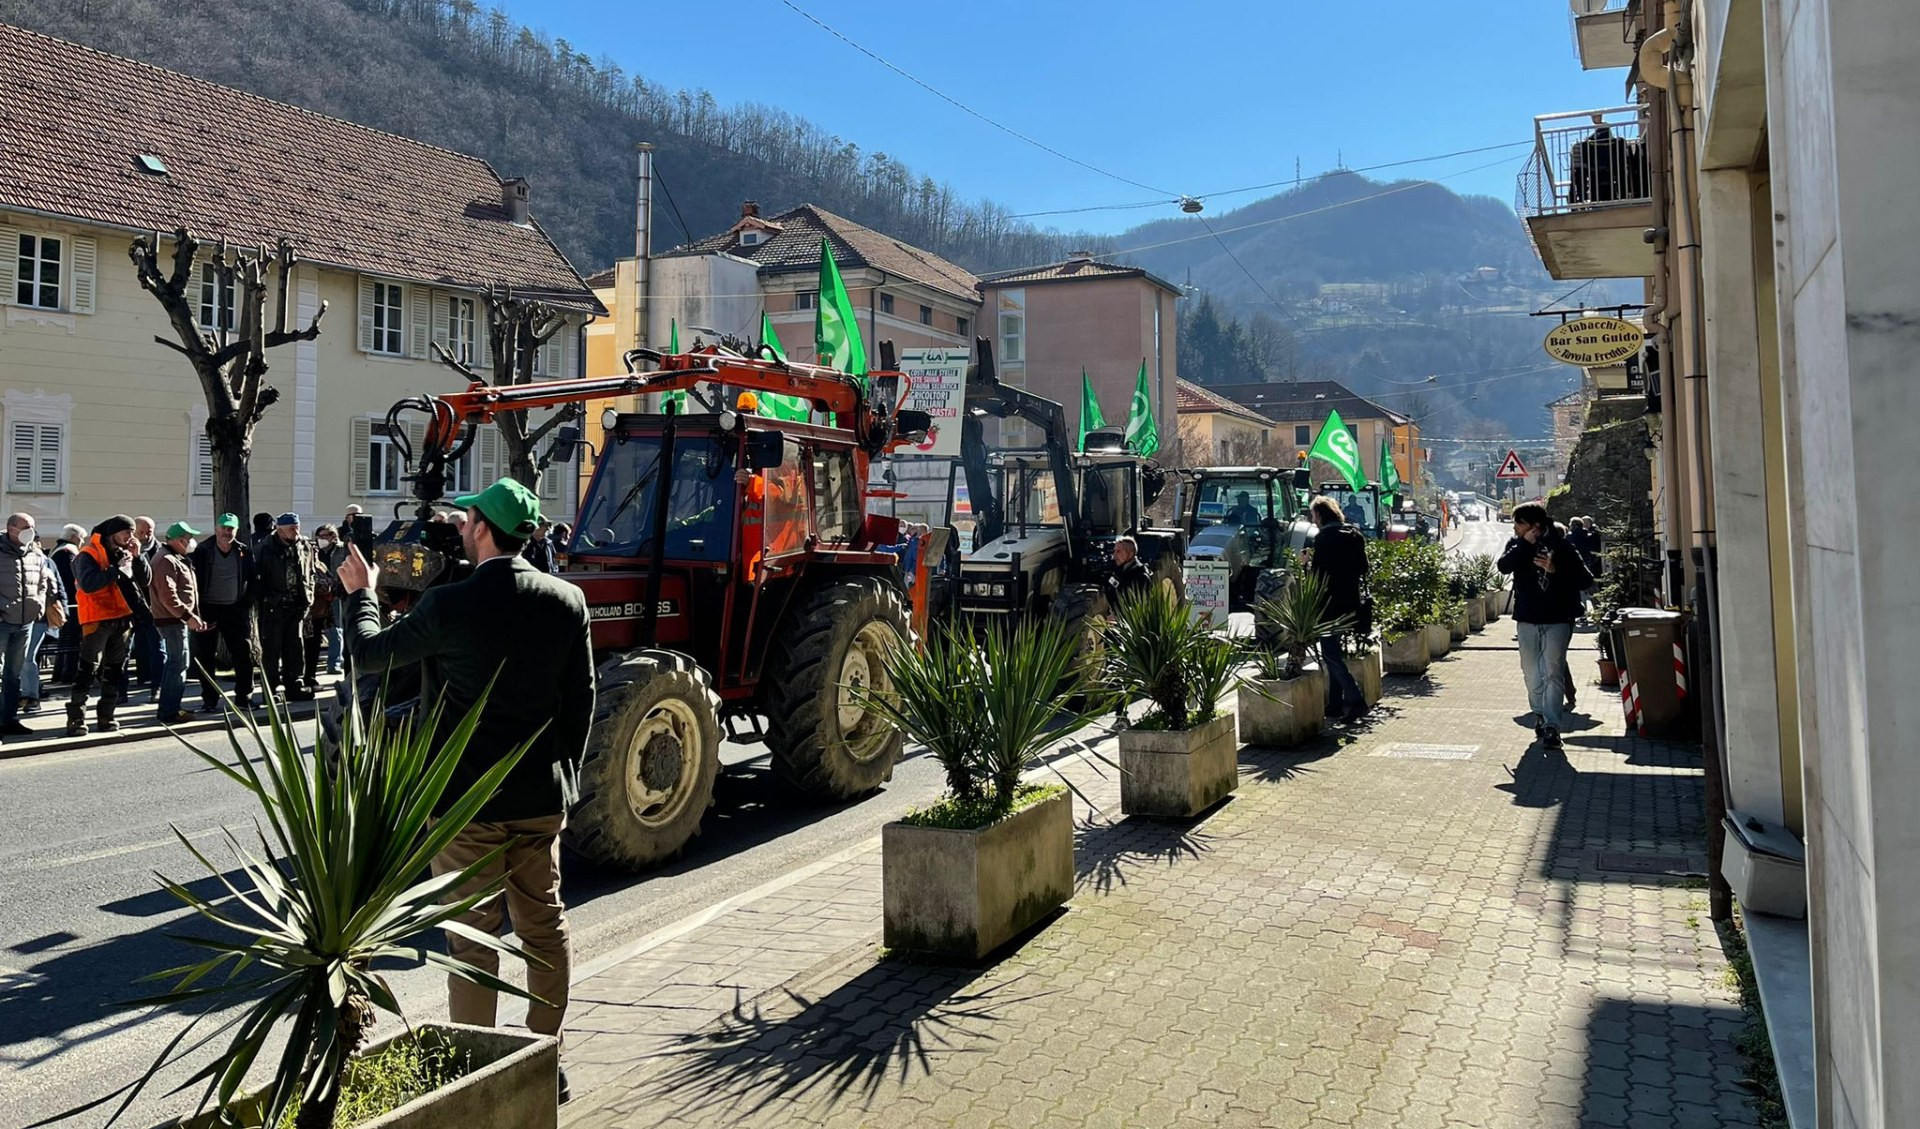 Peste suina, 500 agricoltori in piazza coi trattori: 